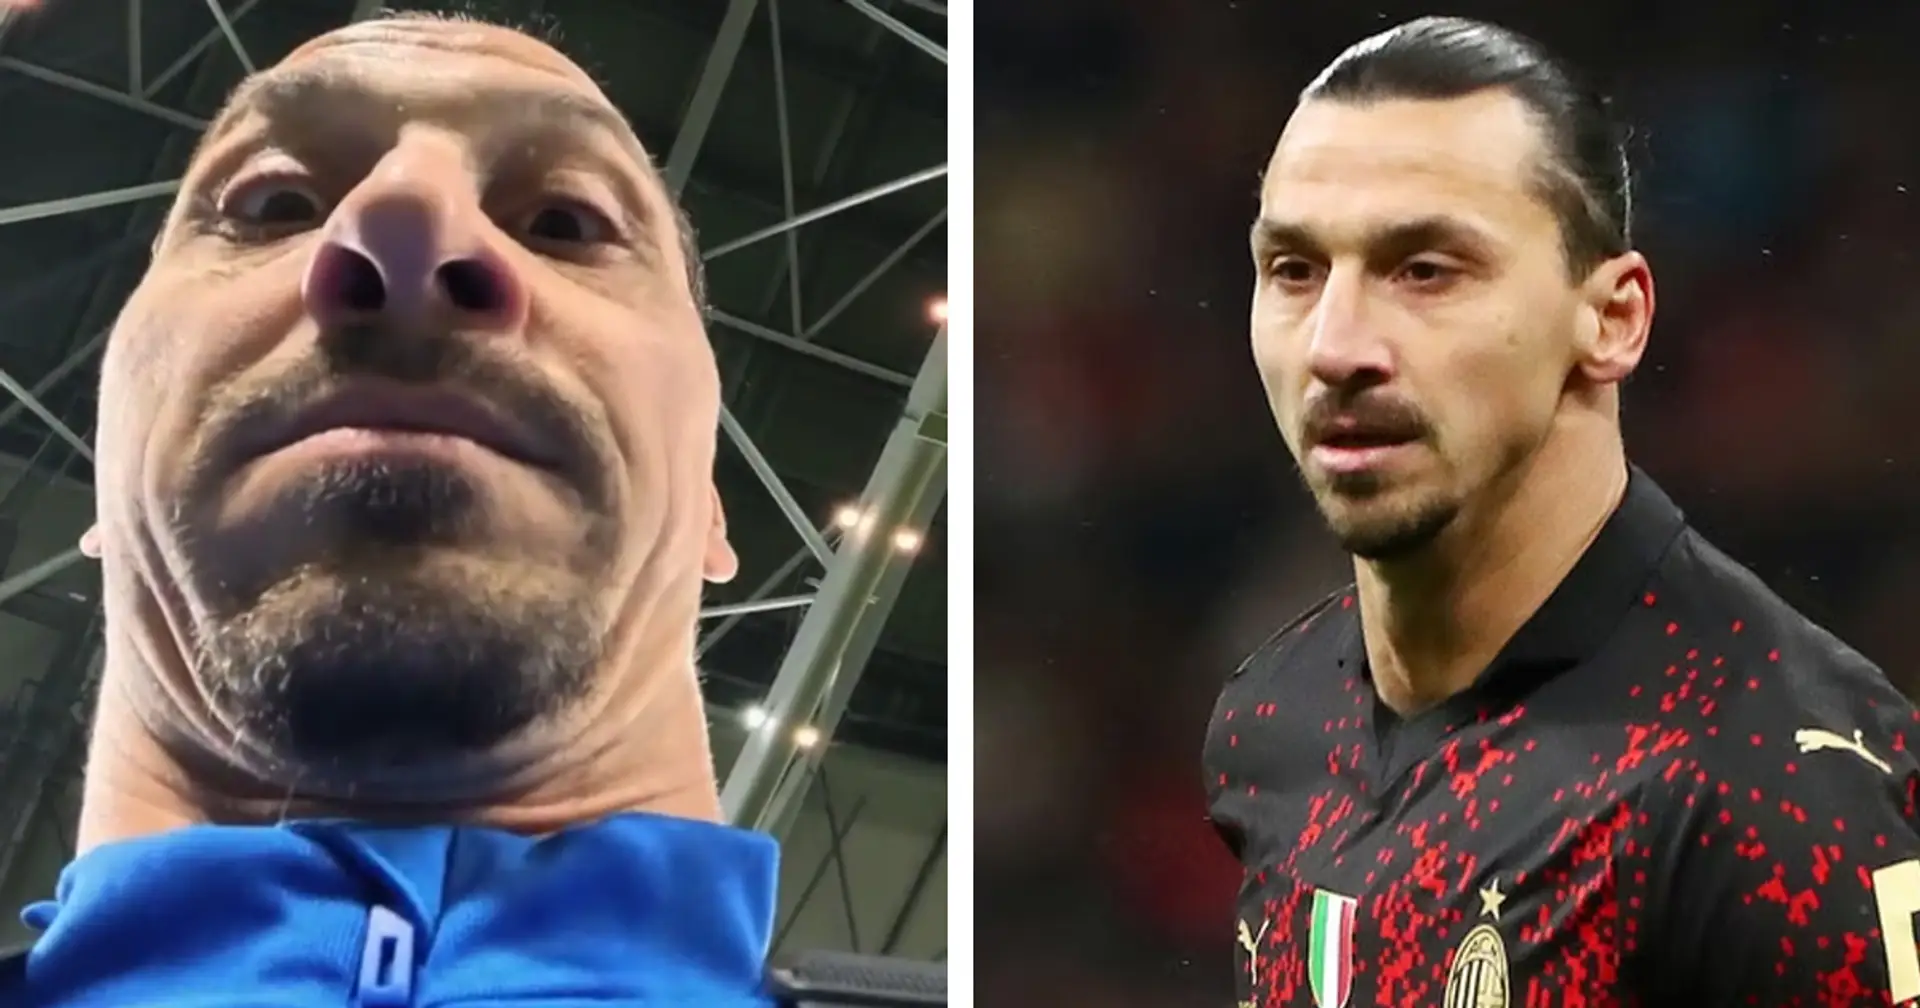 Cosa vede Zlatan? L'attaccante del Milan fa sognare i tifosi mettendoli al "suo posto" - VIDEO integrale